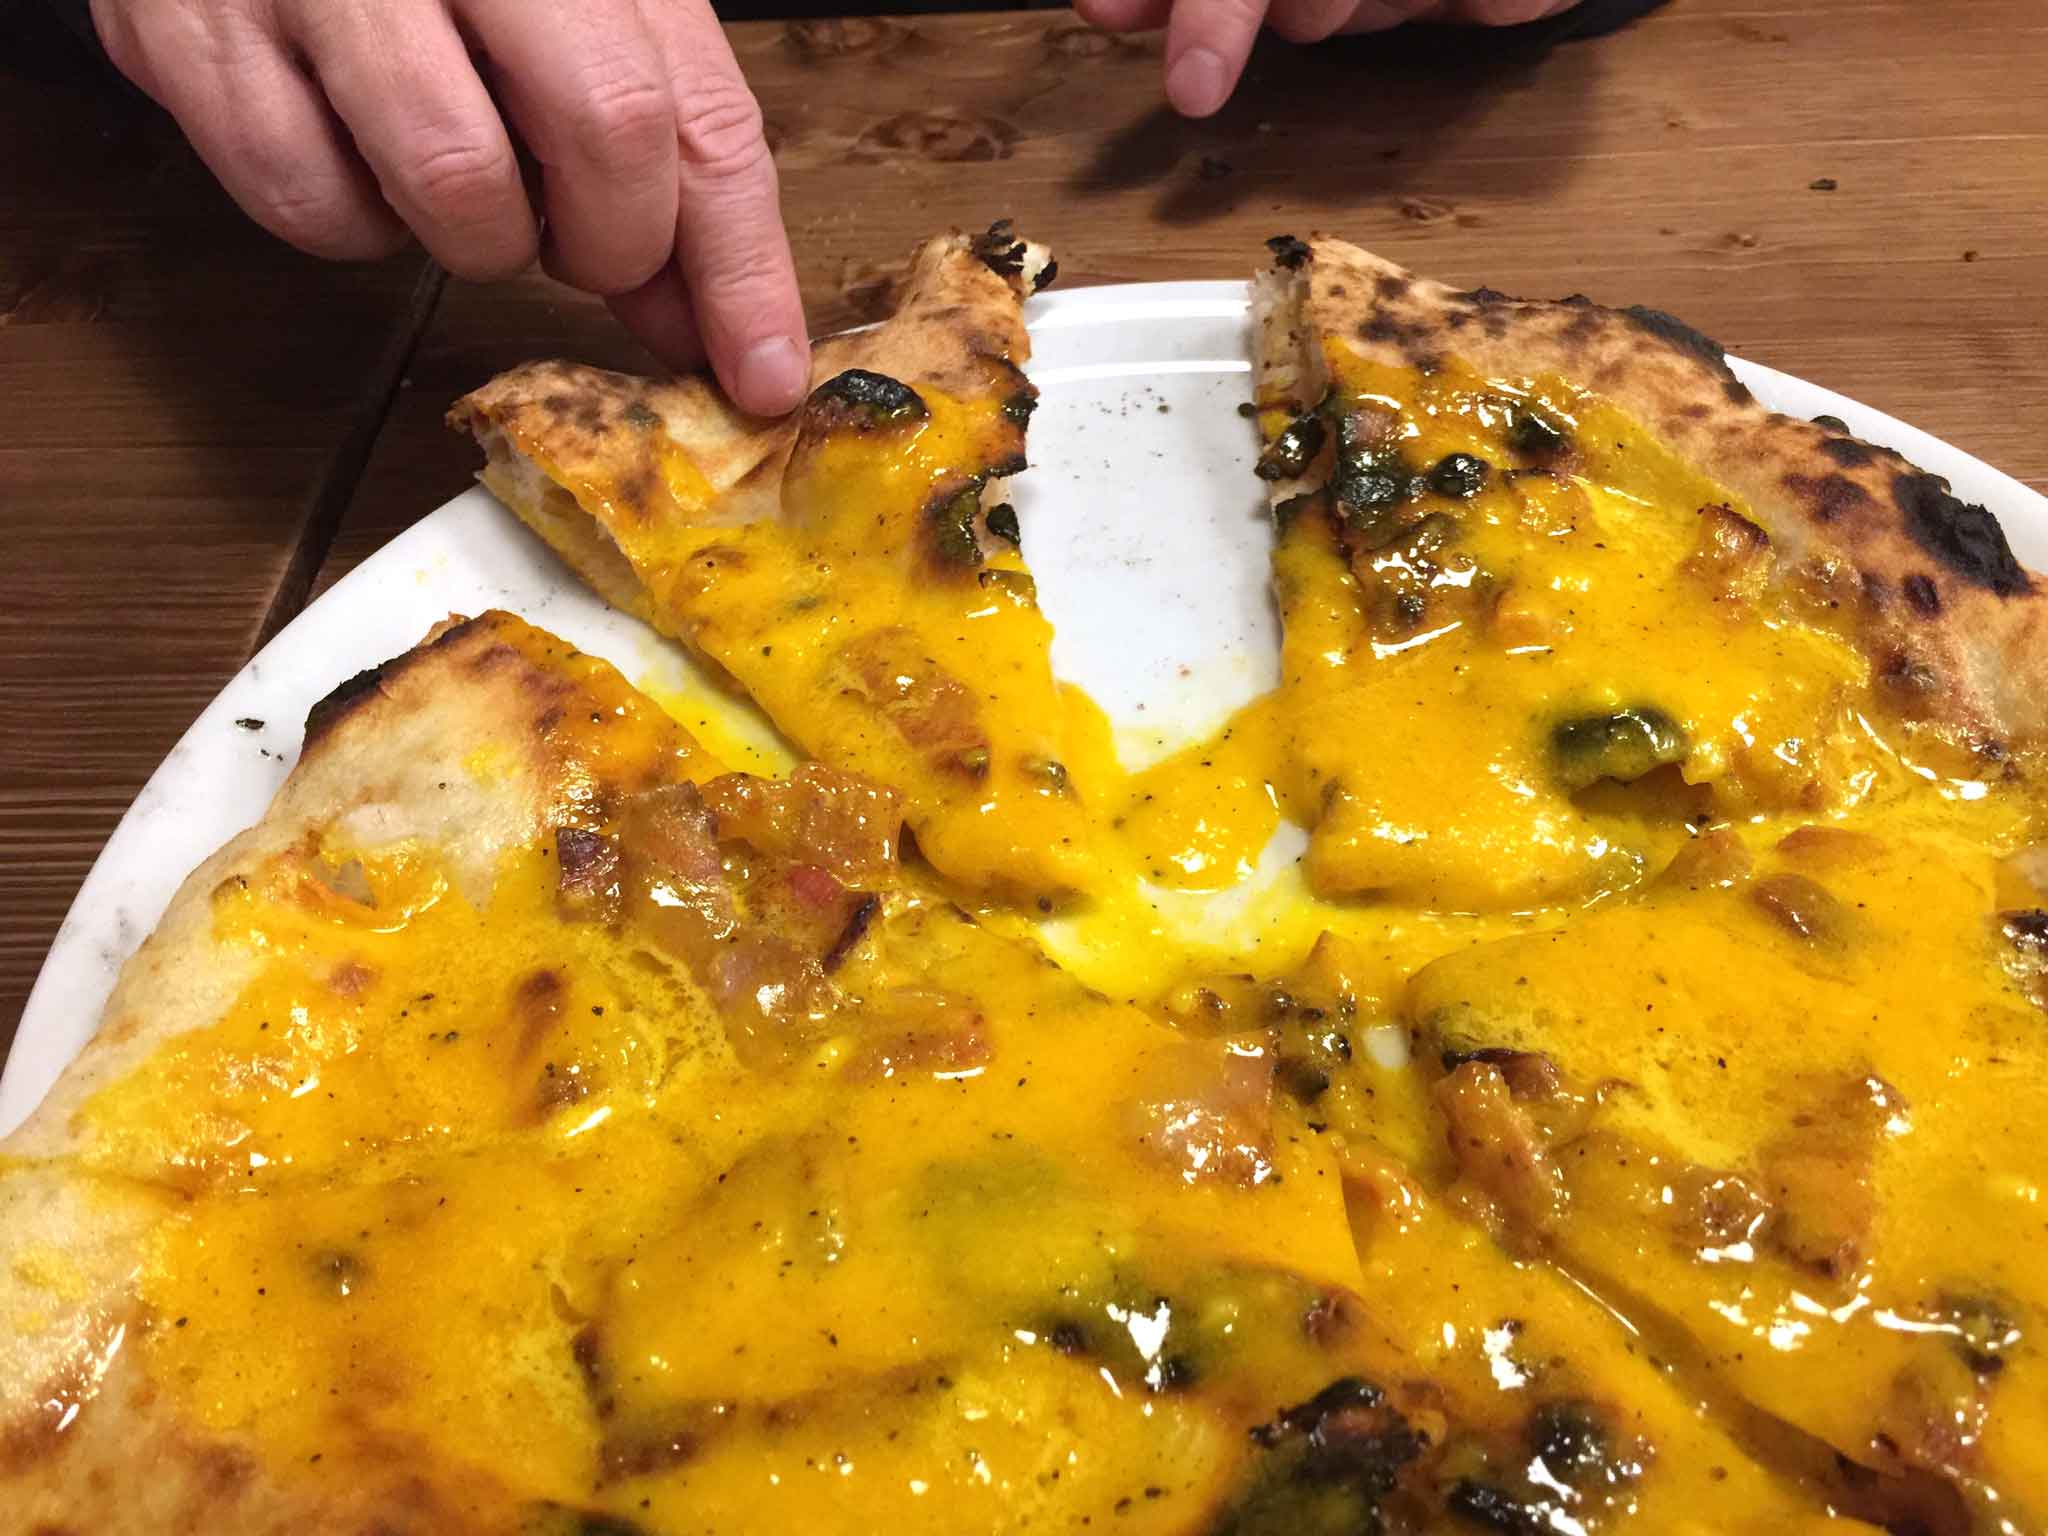 pizza carbonara